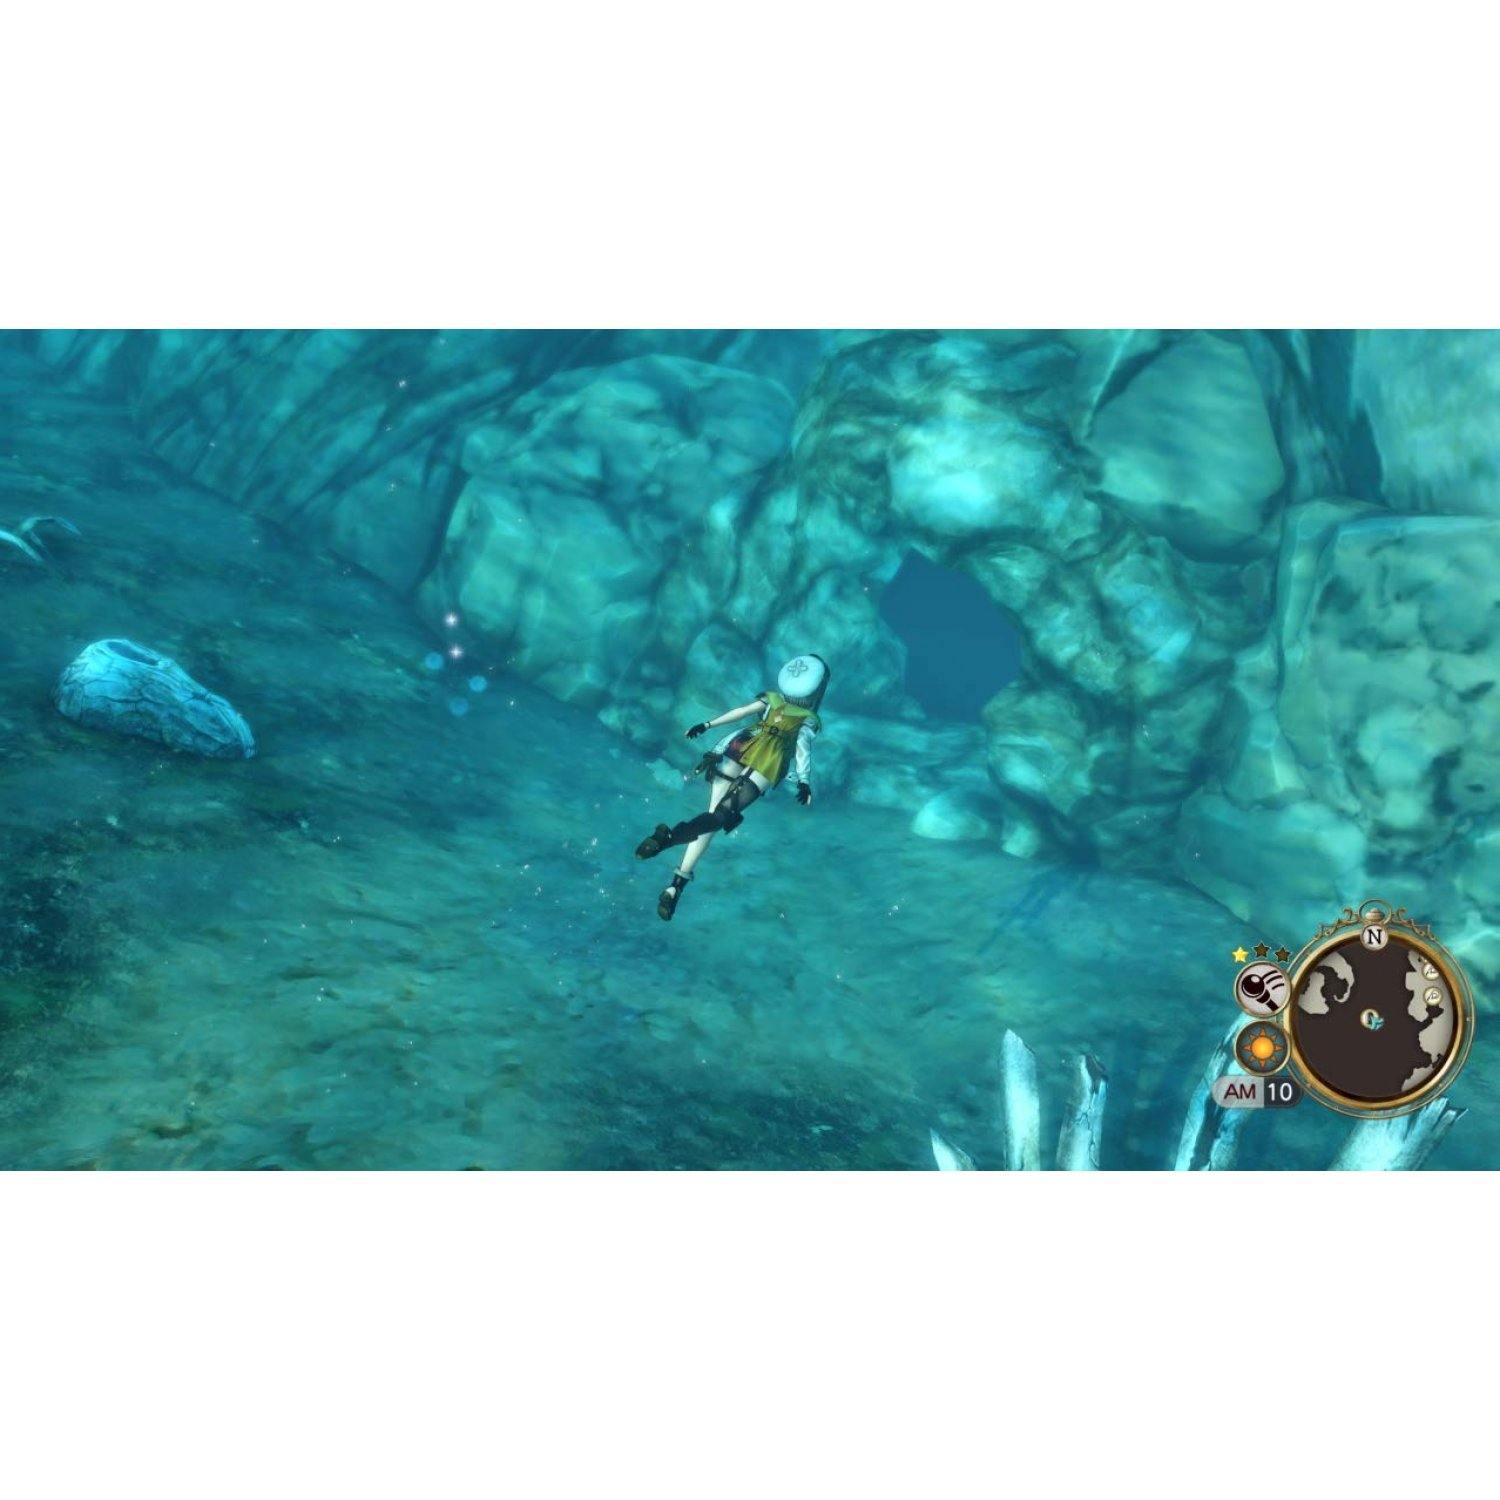 Atelier Ryza 2 : Lost Legends & the Secret Fairy (PS4) - flash vidéo